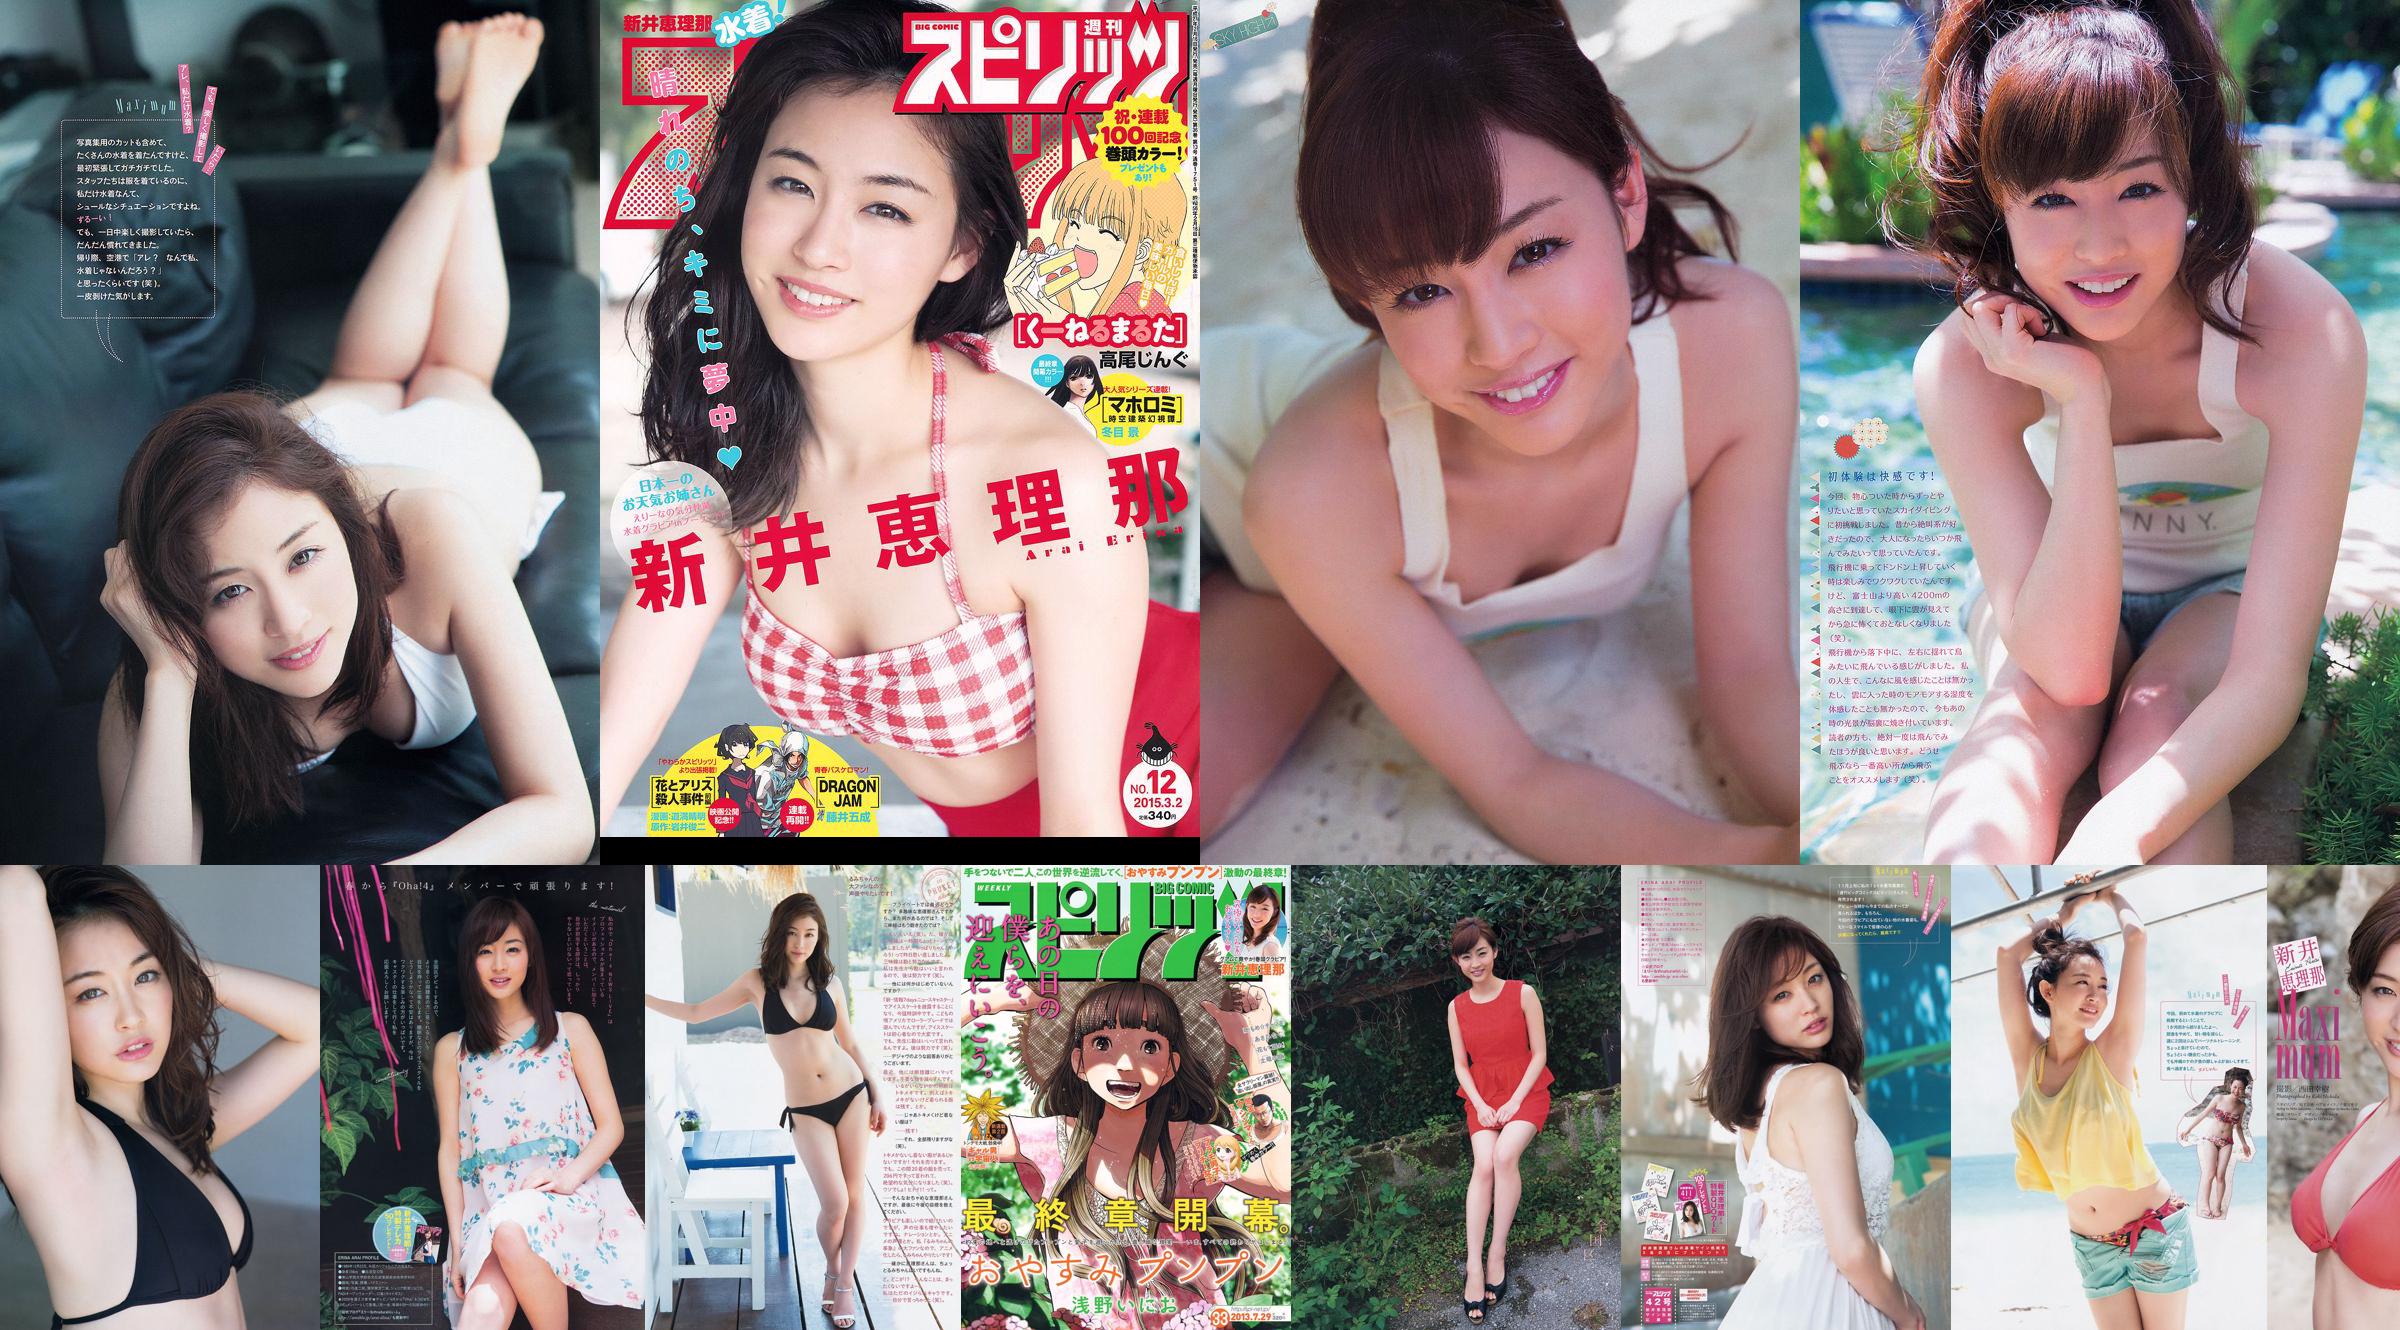 Haruka Shimazaki Yui Yokoyama Moeno Nito Ayame Misaki Chinami Suzuki Nami Iwasaki [Weekly Playboy] 2012 No.51 Photo Mori No.af6c52 Trang 1